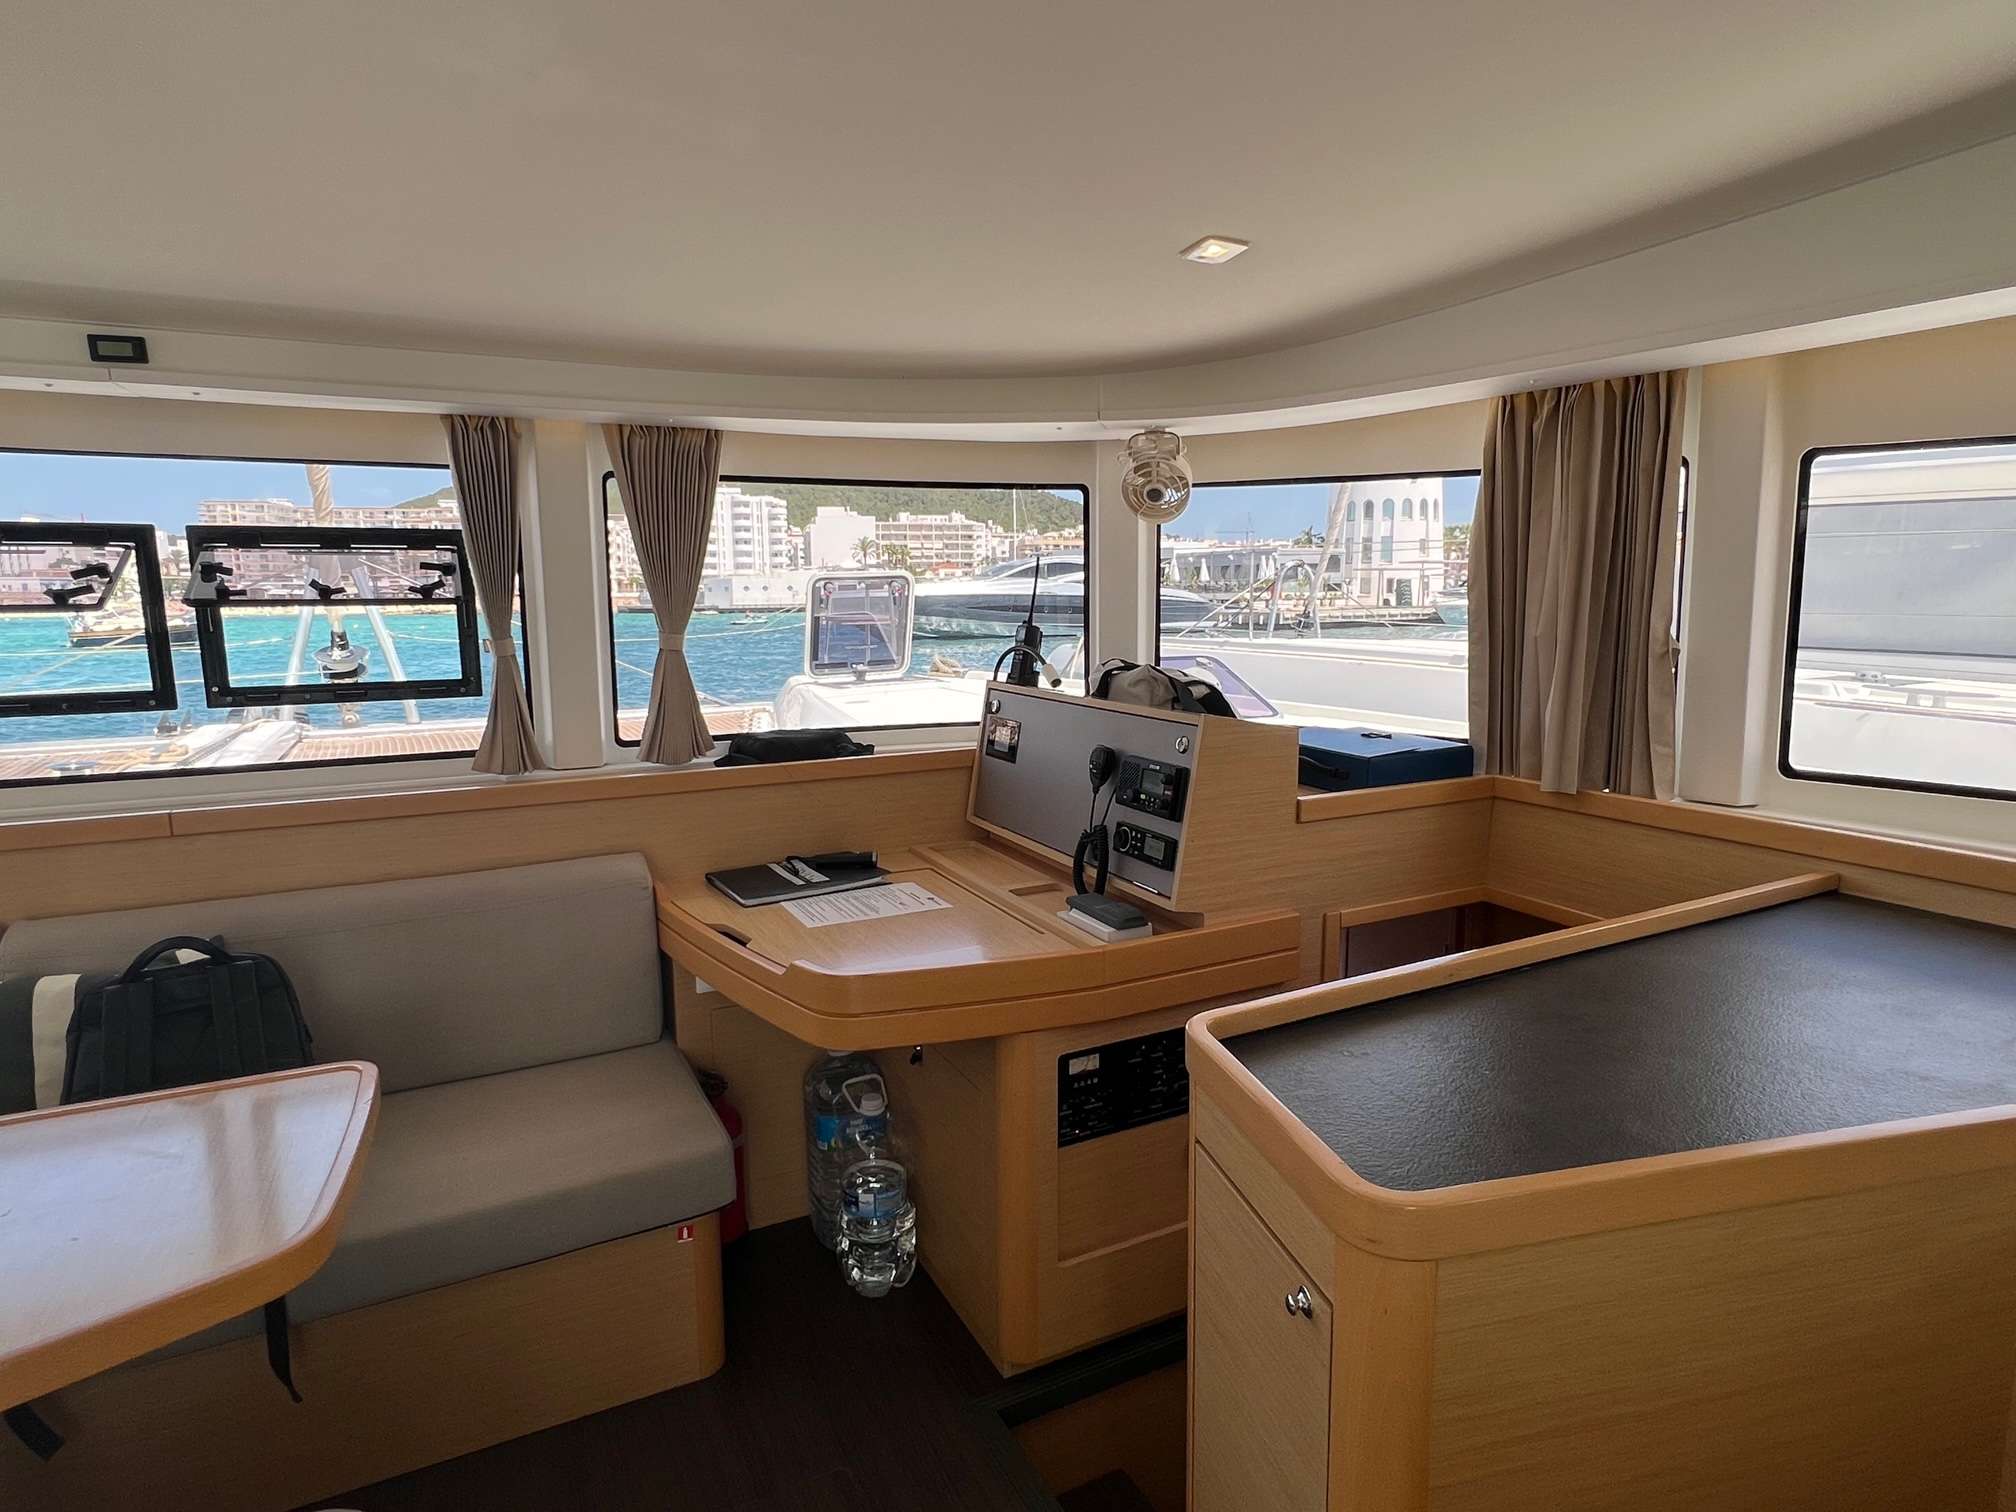 MARES - Yacht Charter Vilajoyosa & Boat hire in Balearics & Spain 4